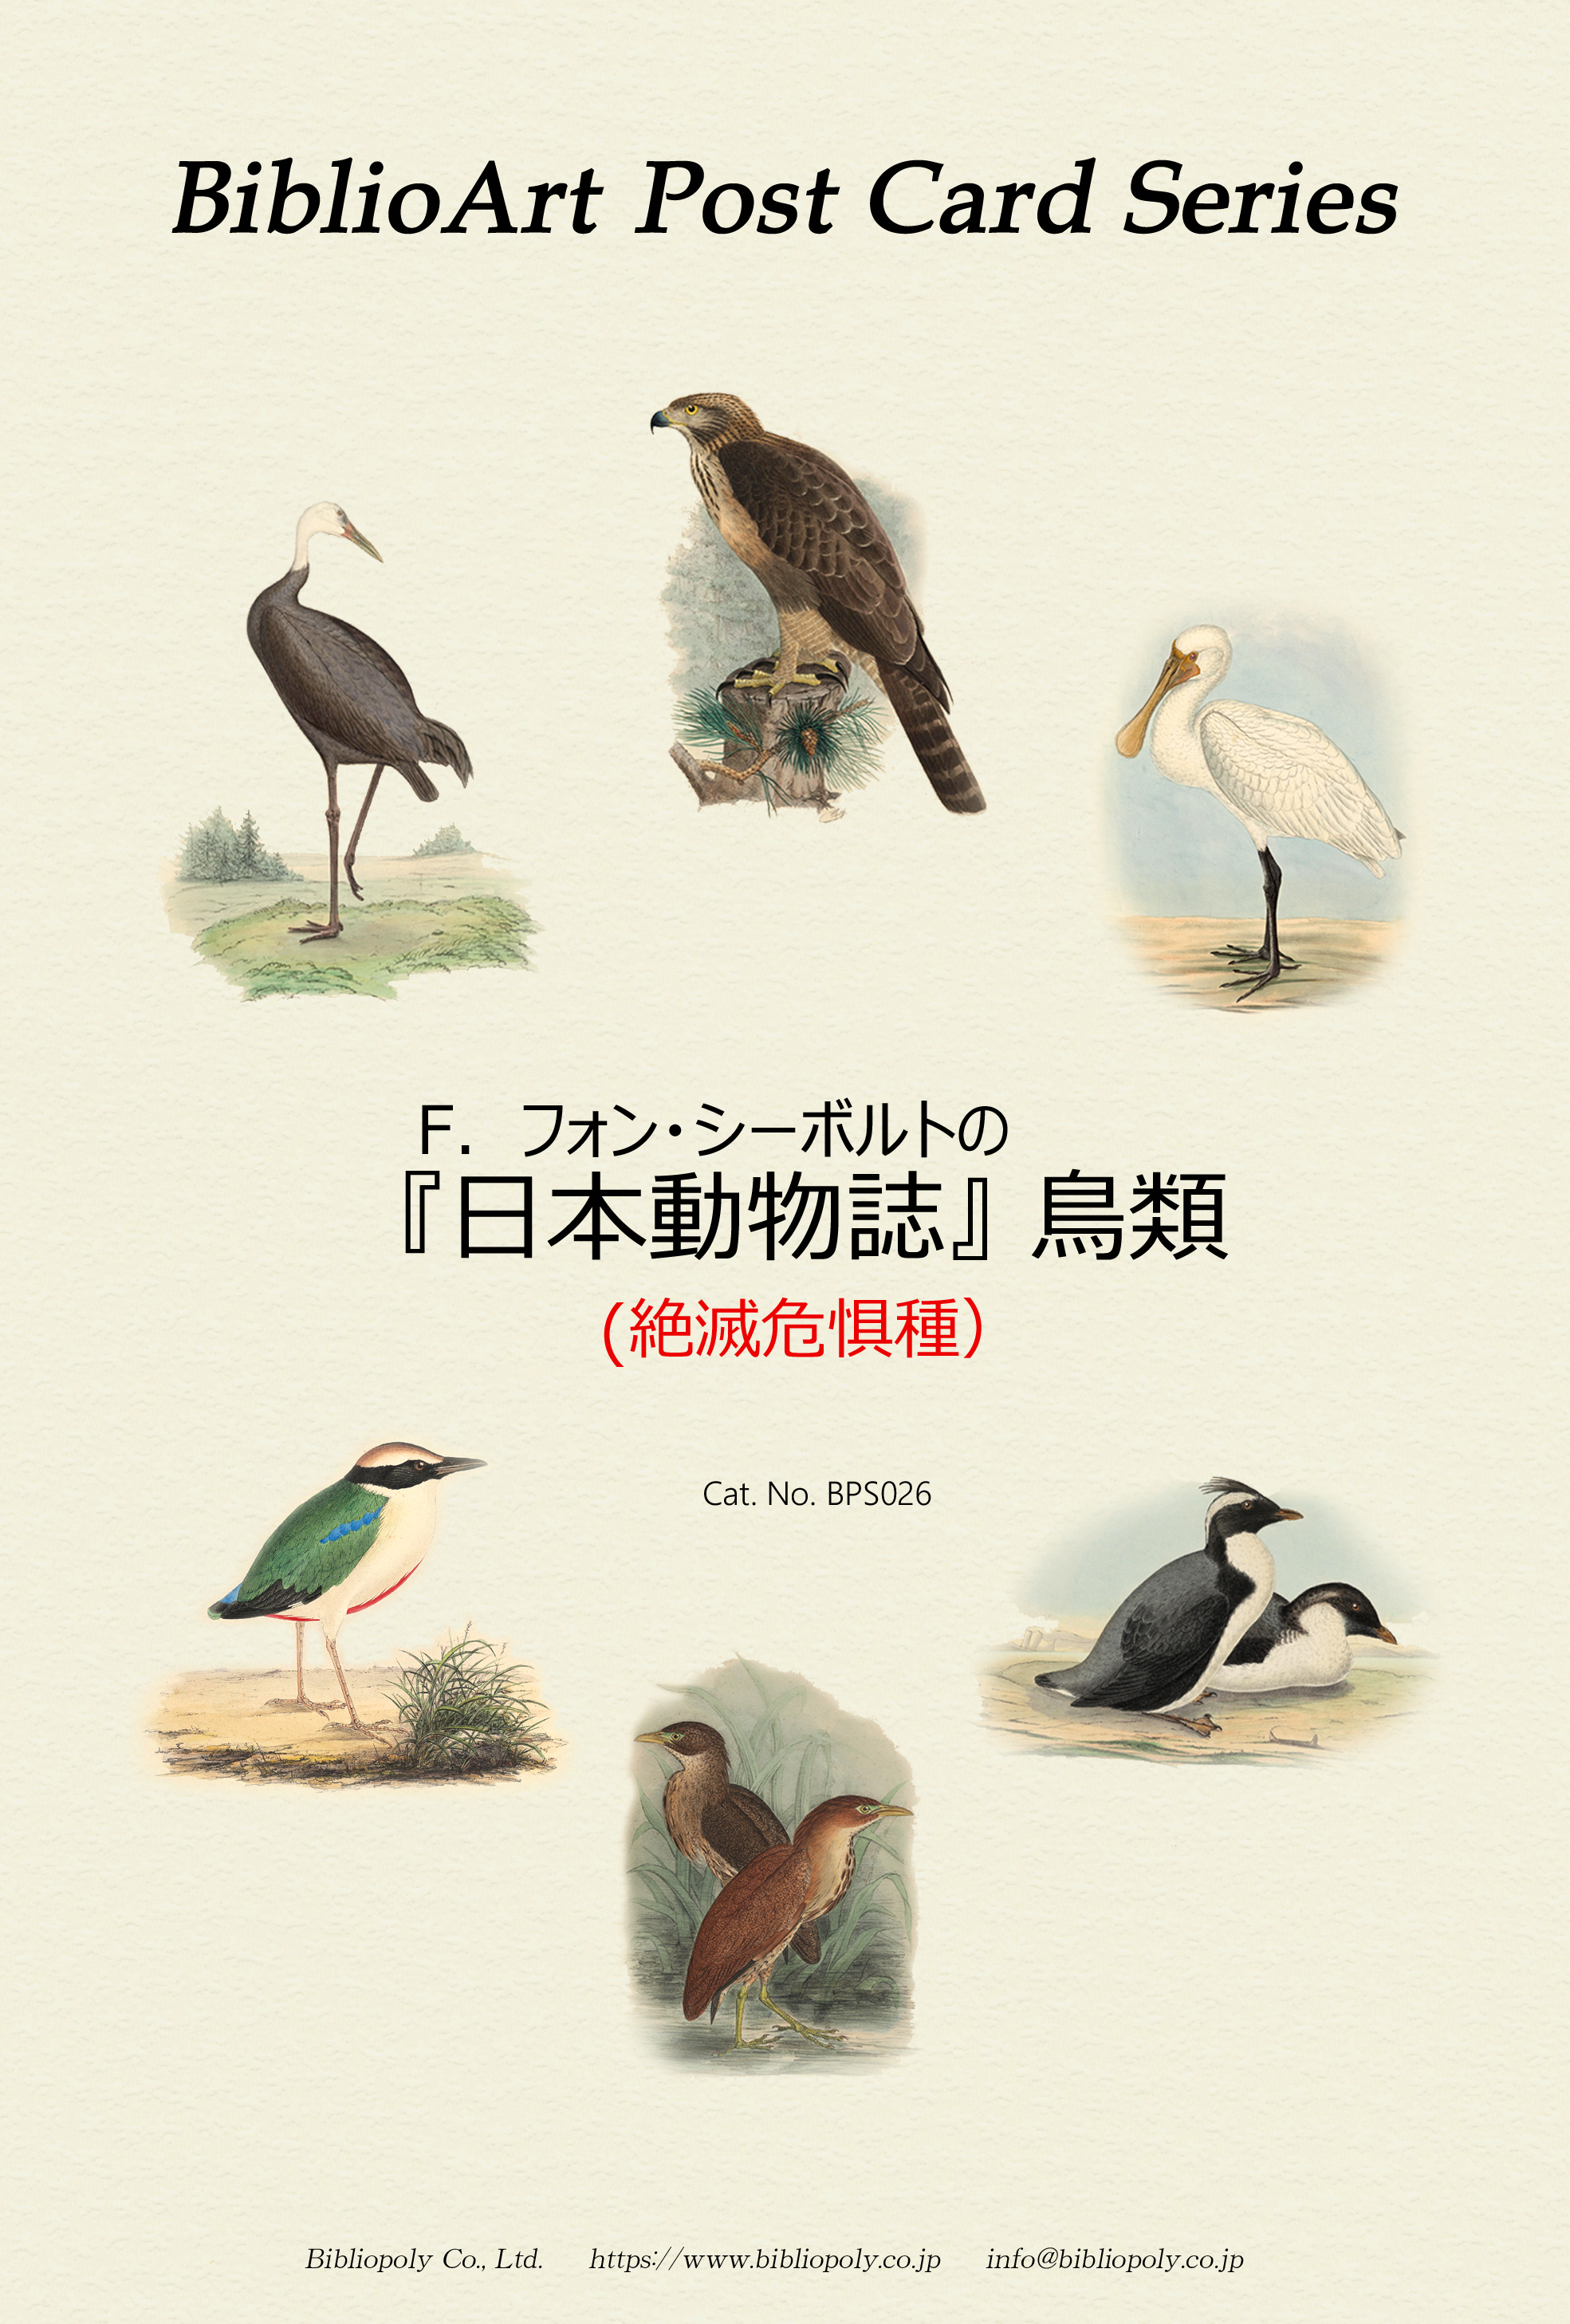 ポストカードセット：BPS026：シーボルトの『日本動物誌』鳥類（絶滅危惧種）